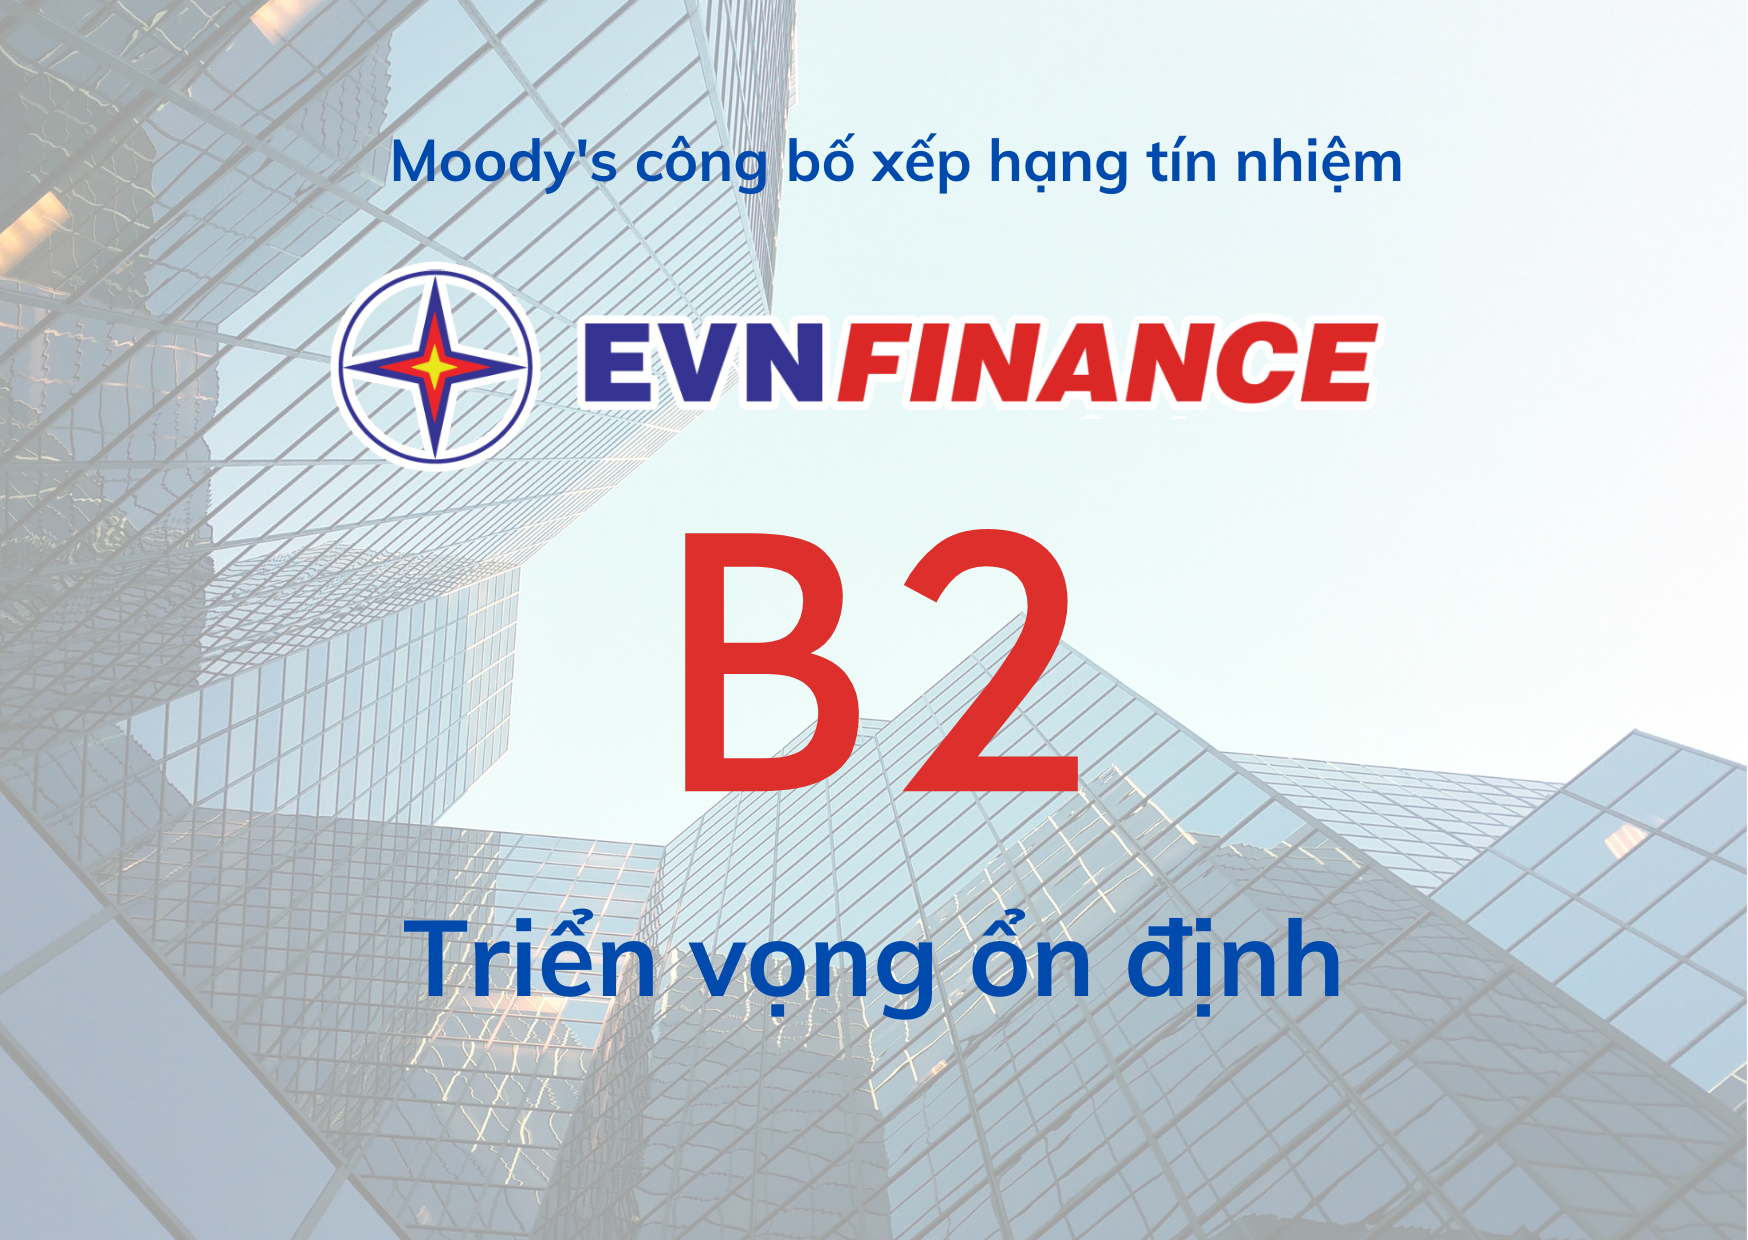 Moody’s xếp hạng tín nhiệm EVNFinance B2 năm thứ hai liên tiếp.